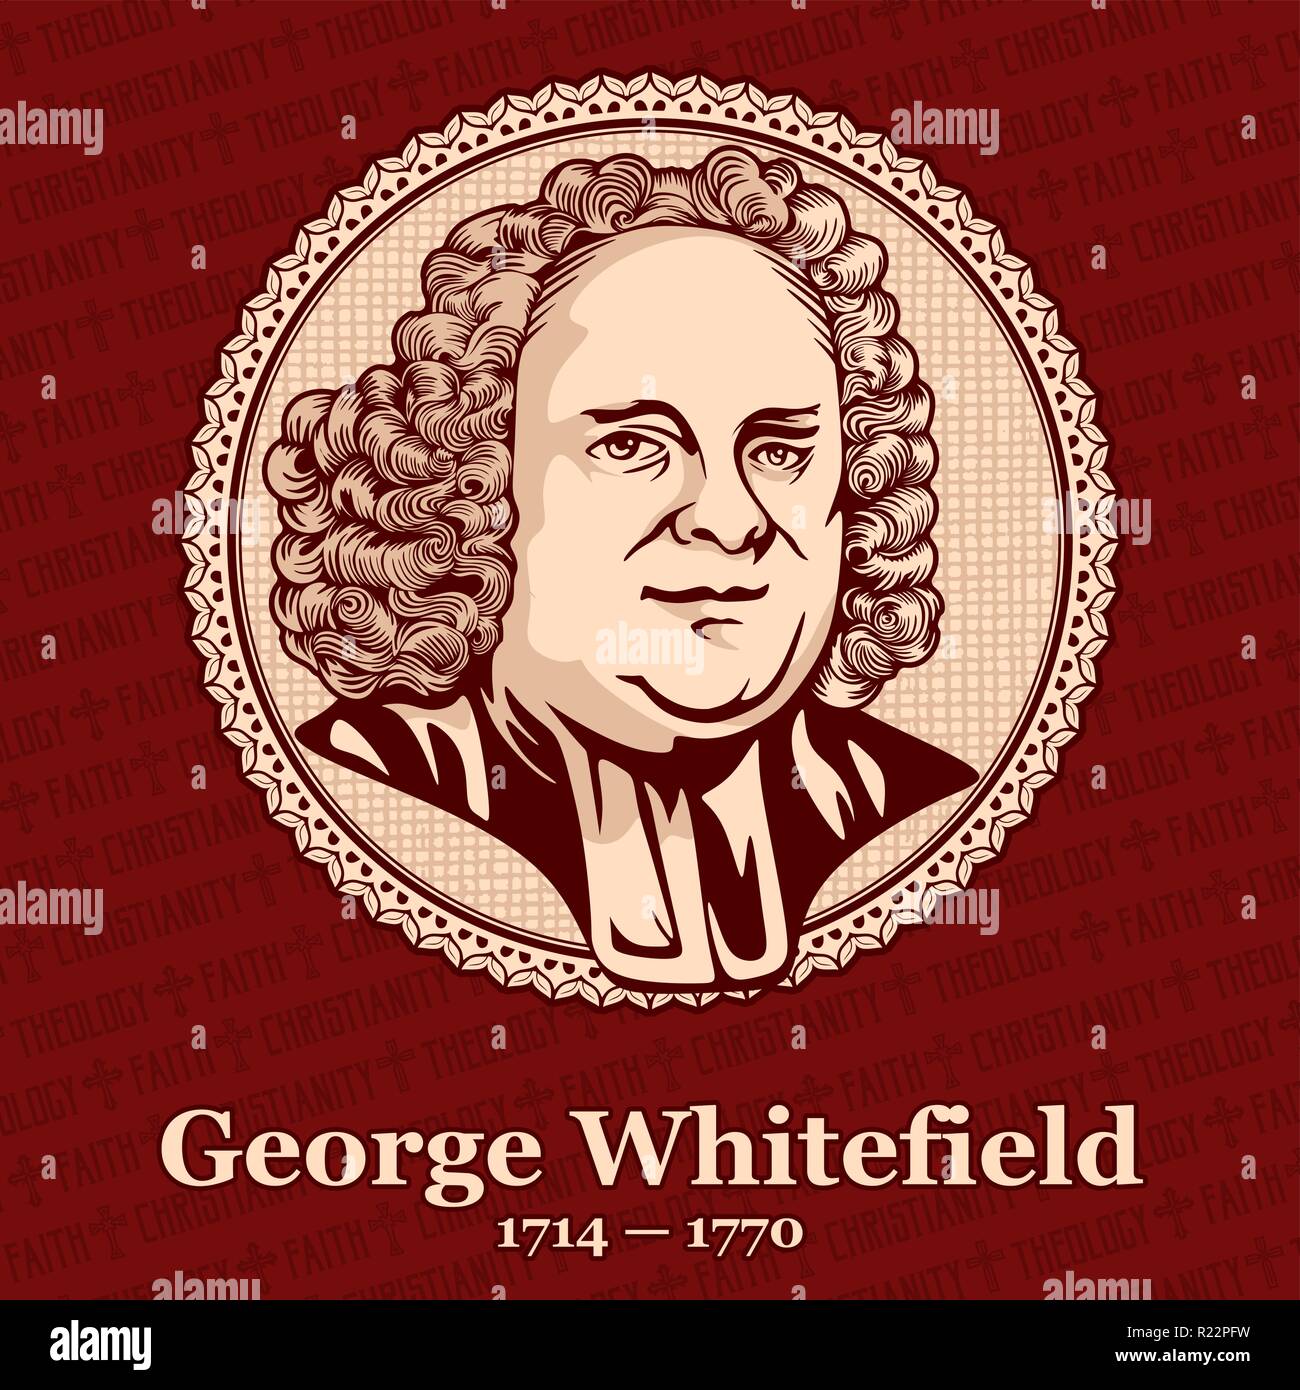 George Whitefield (1714 - 1770) était un prédicateur, un des fondateurs (avec John Wesley) et les dirigeants de l'Église méthodiste protestante Chur Illustration de Vecteur